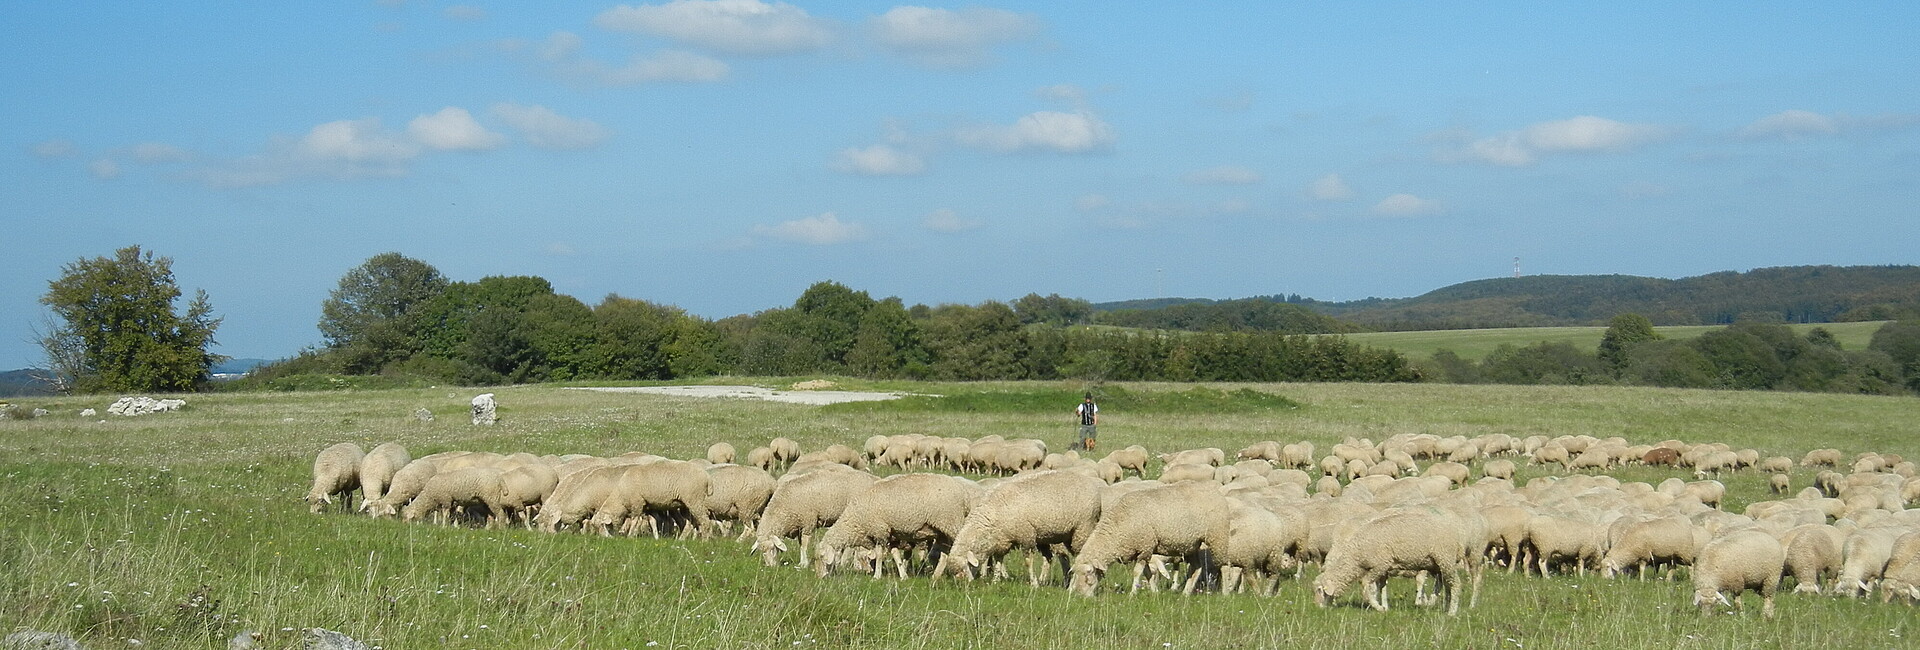 Eine Herde von Schafen ziehen über Wacholderheiden